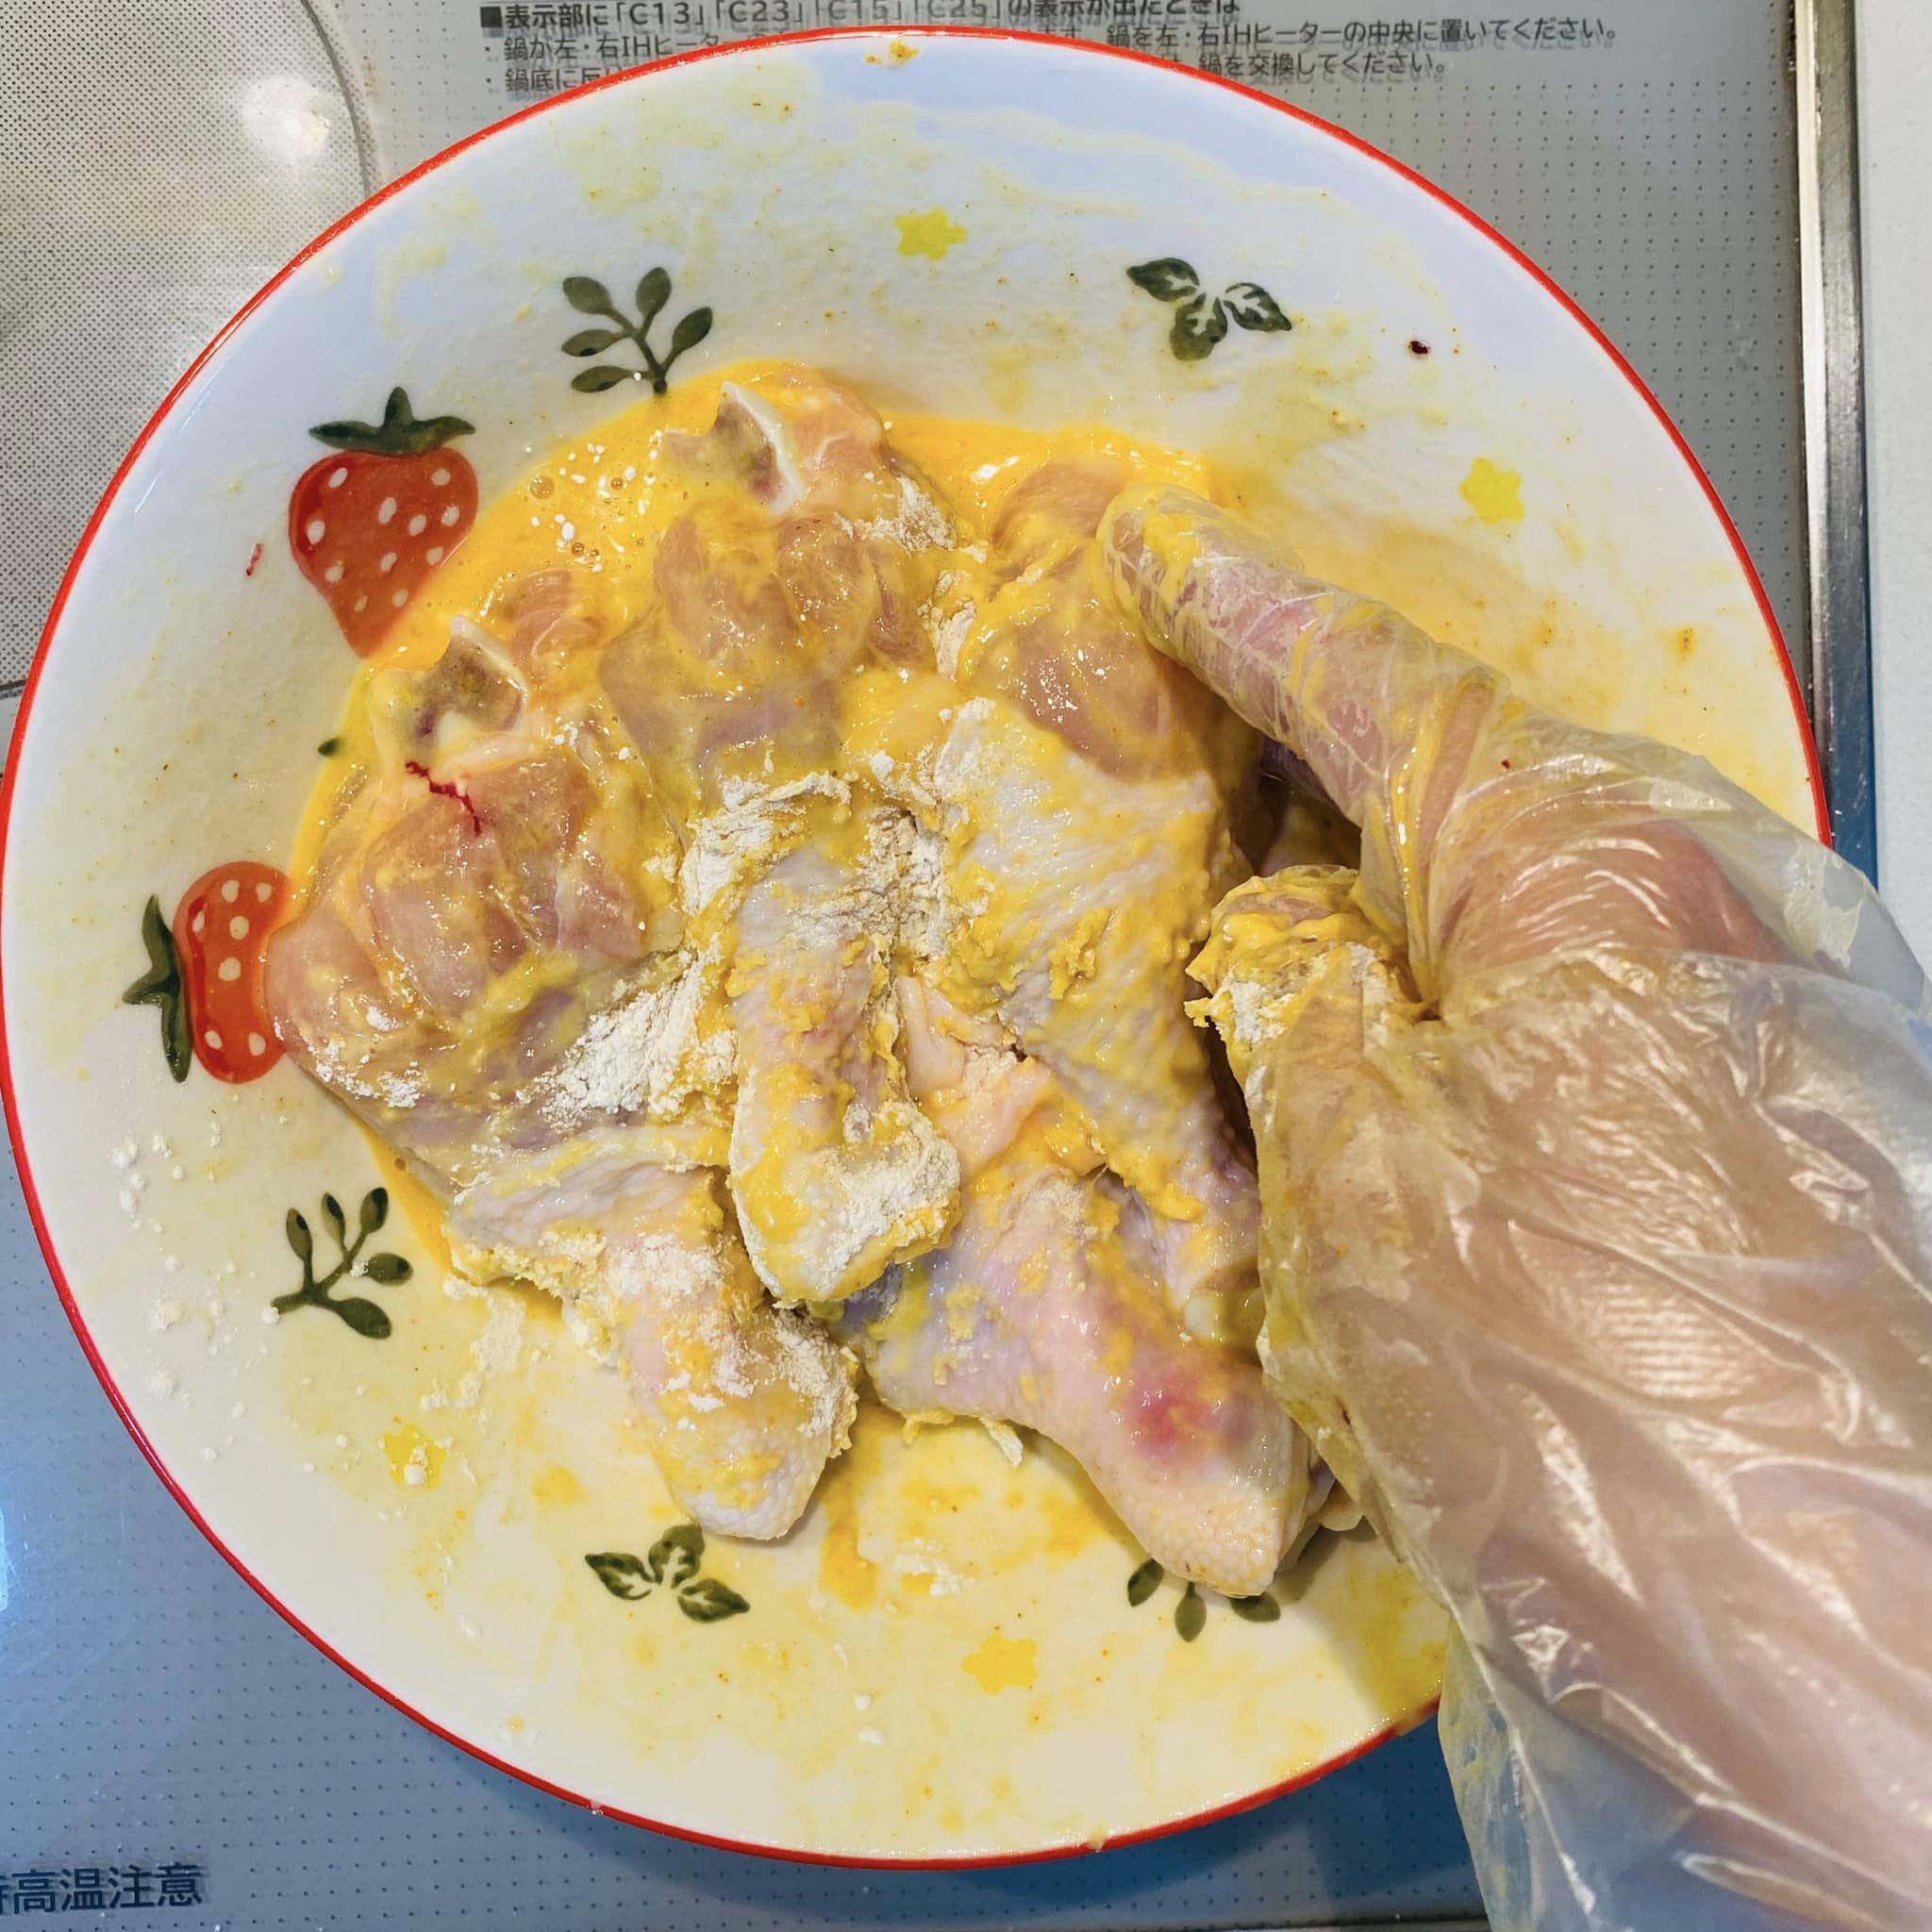 Sau khi ướp, trộn đều đùi gà với&nbsp;1 quả trứng gà và 1 muỗng bột chiên giòn.